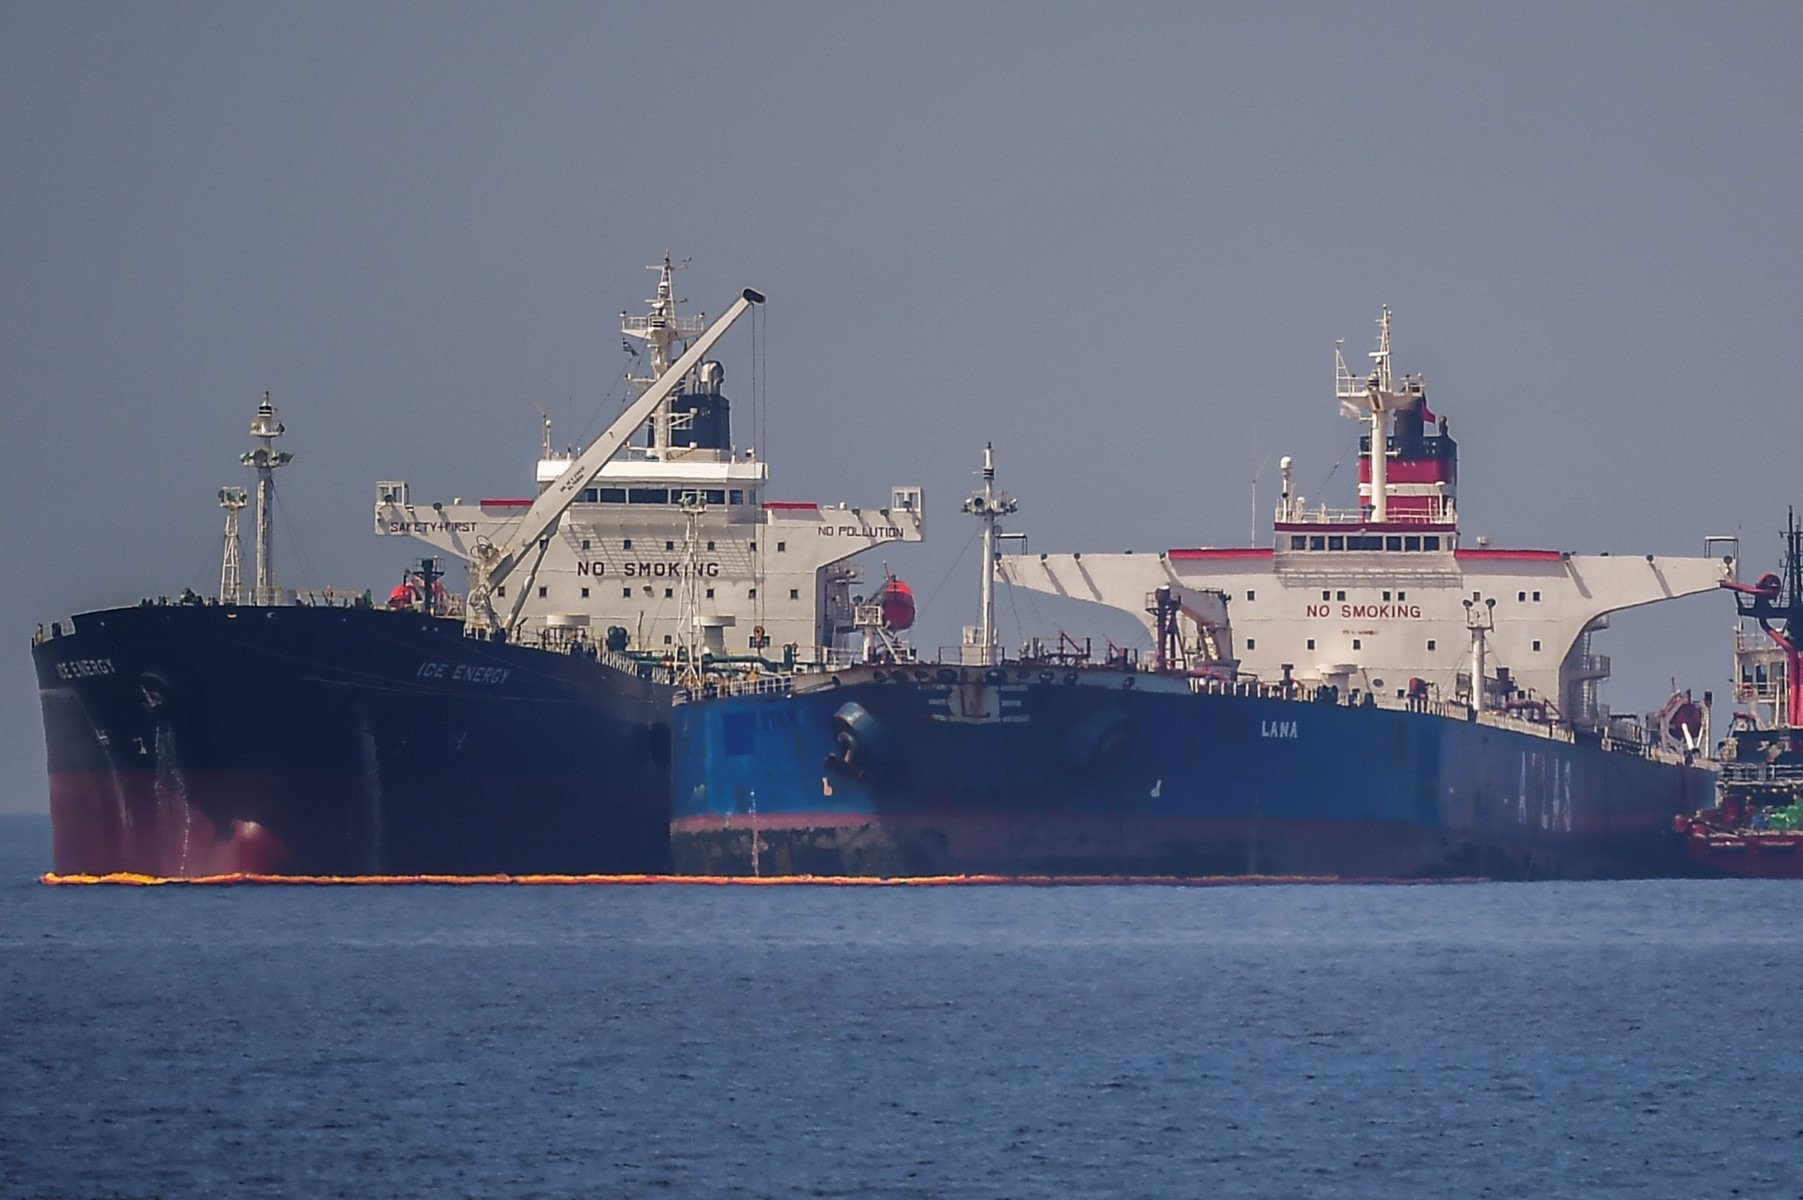 Tàu chở dầu mang cờ Liberia Ice Energy (trái) chuyển dầu thô từ tàu chở dầu mang cờ Nga Lana (phải) ở ngoài khơi bờ biển Karystos, trên đảo Evia, Hy Lạp, ngày 29.5.2022. Ảnh: AFP